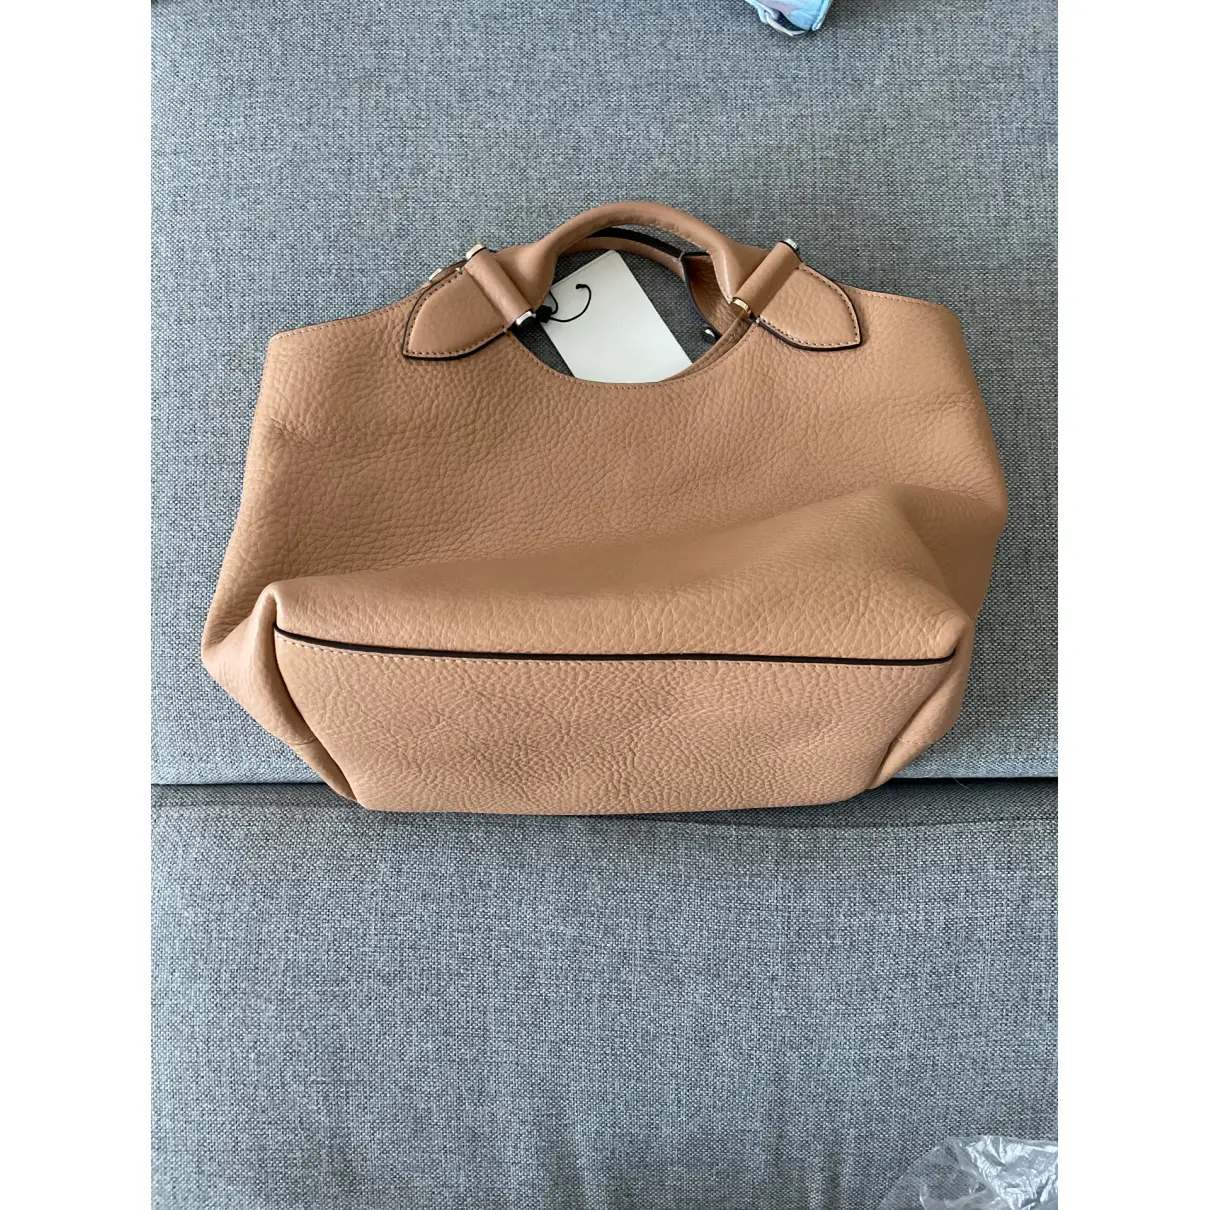 Buy Decadent Copenhagen Leather handbag online